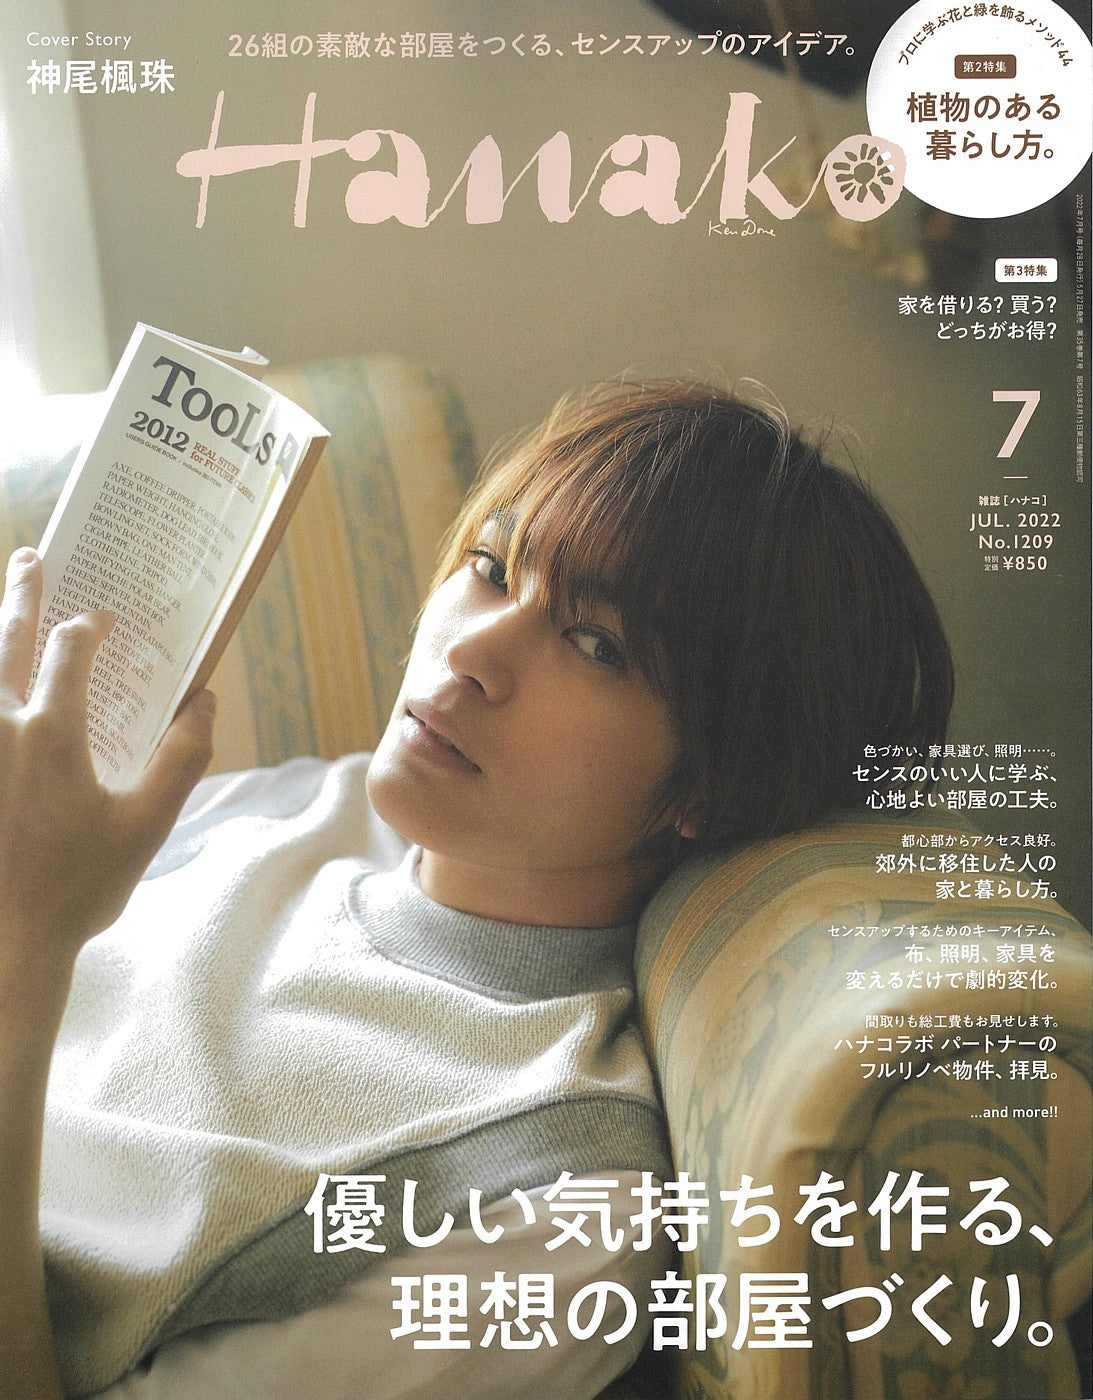 雑誌「Hanako」にて掲載されました。